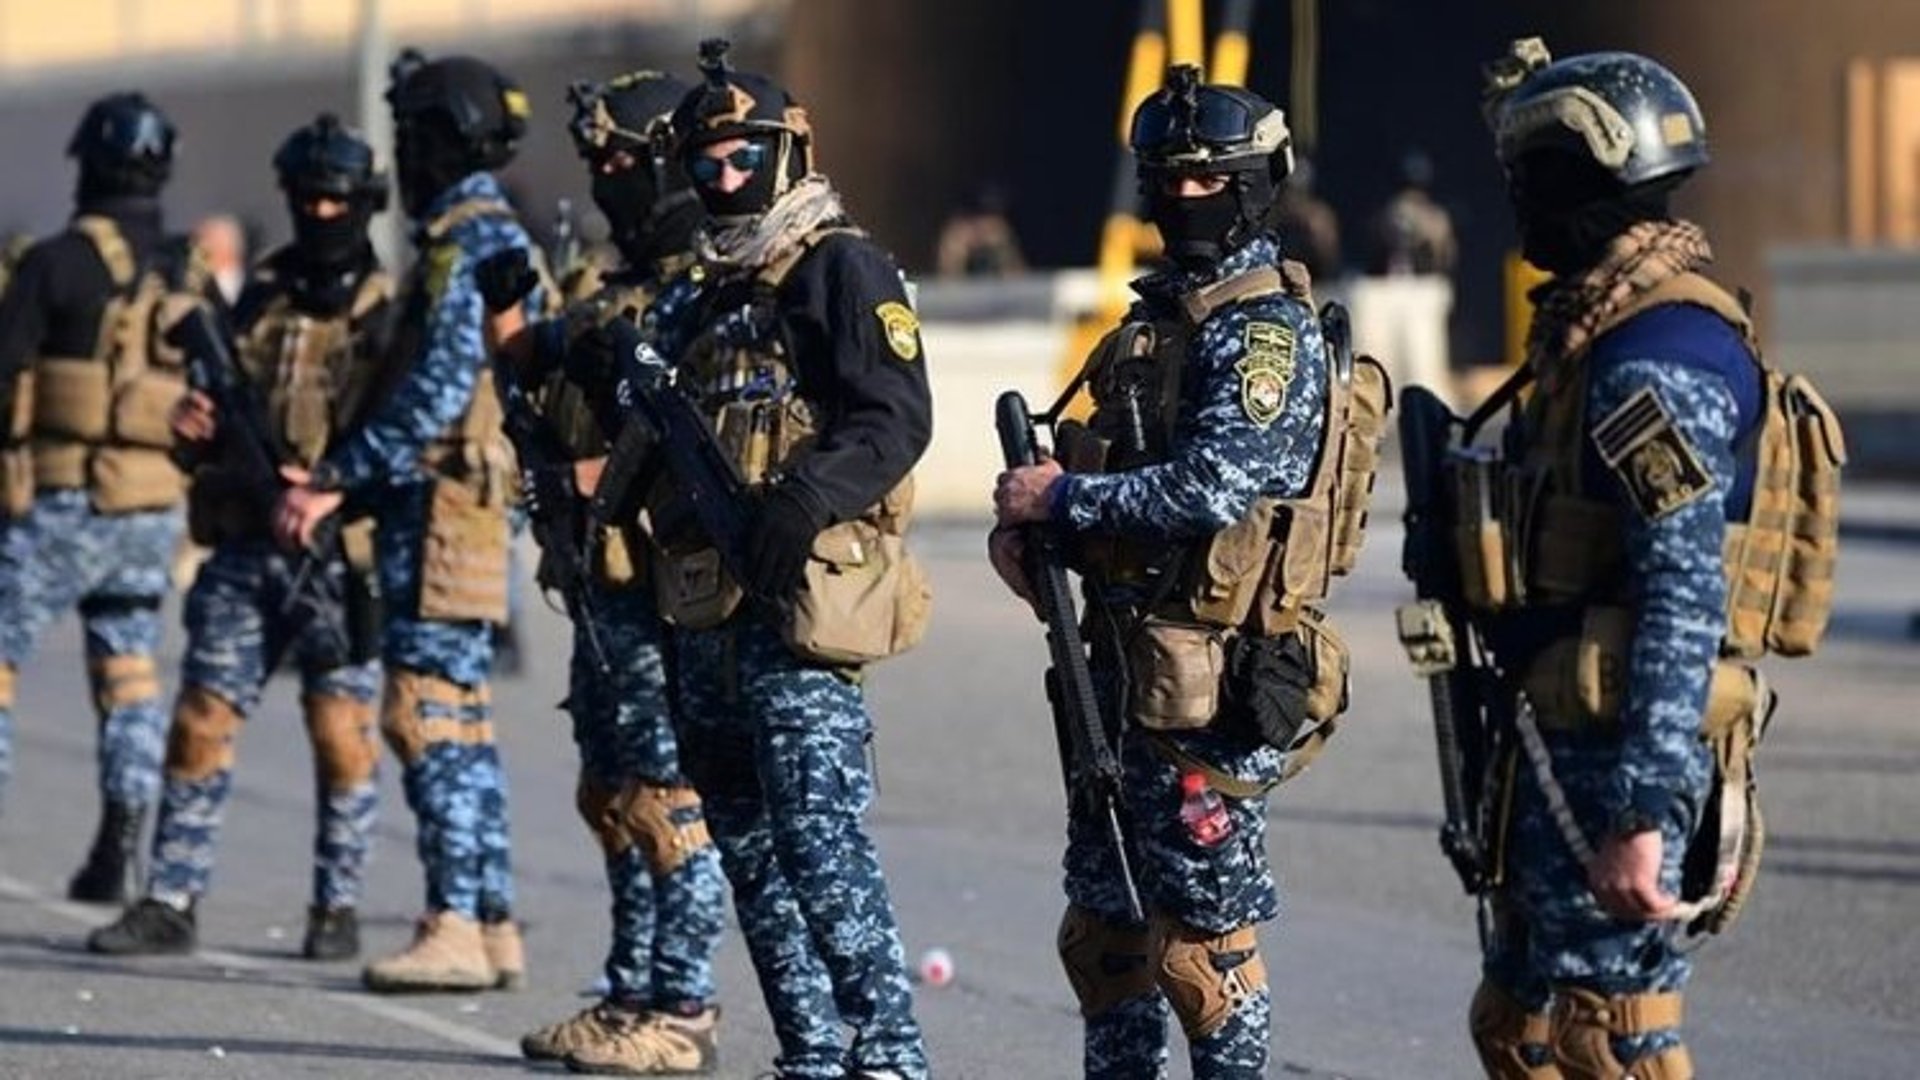 قتل وسرقة واعتداء.. الشرطة تعتقل 8 متهمين وتضبط أسلحة غير مرخصة في بغداد